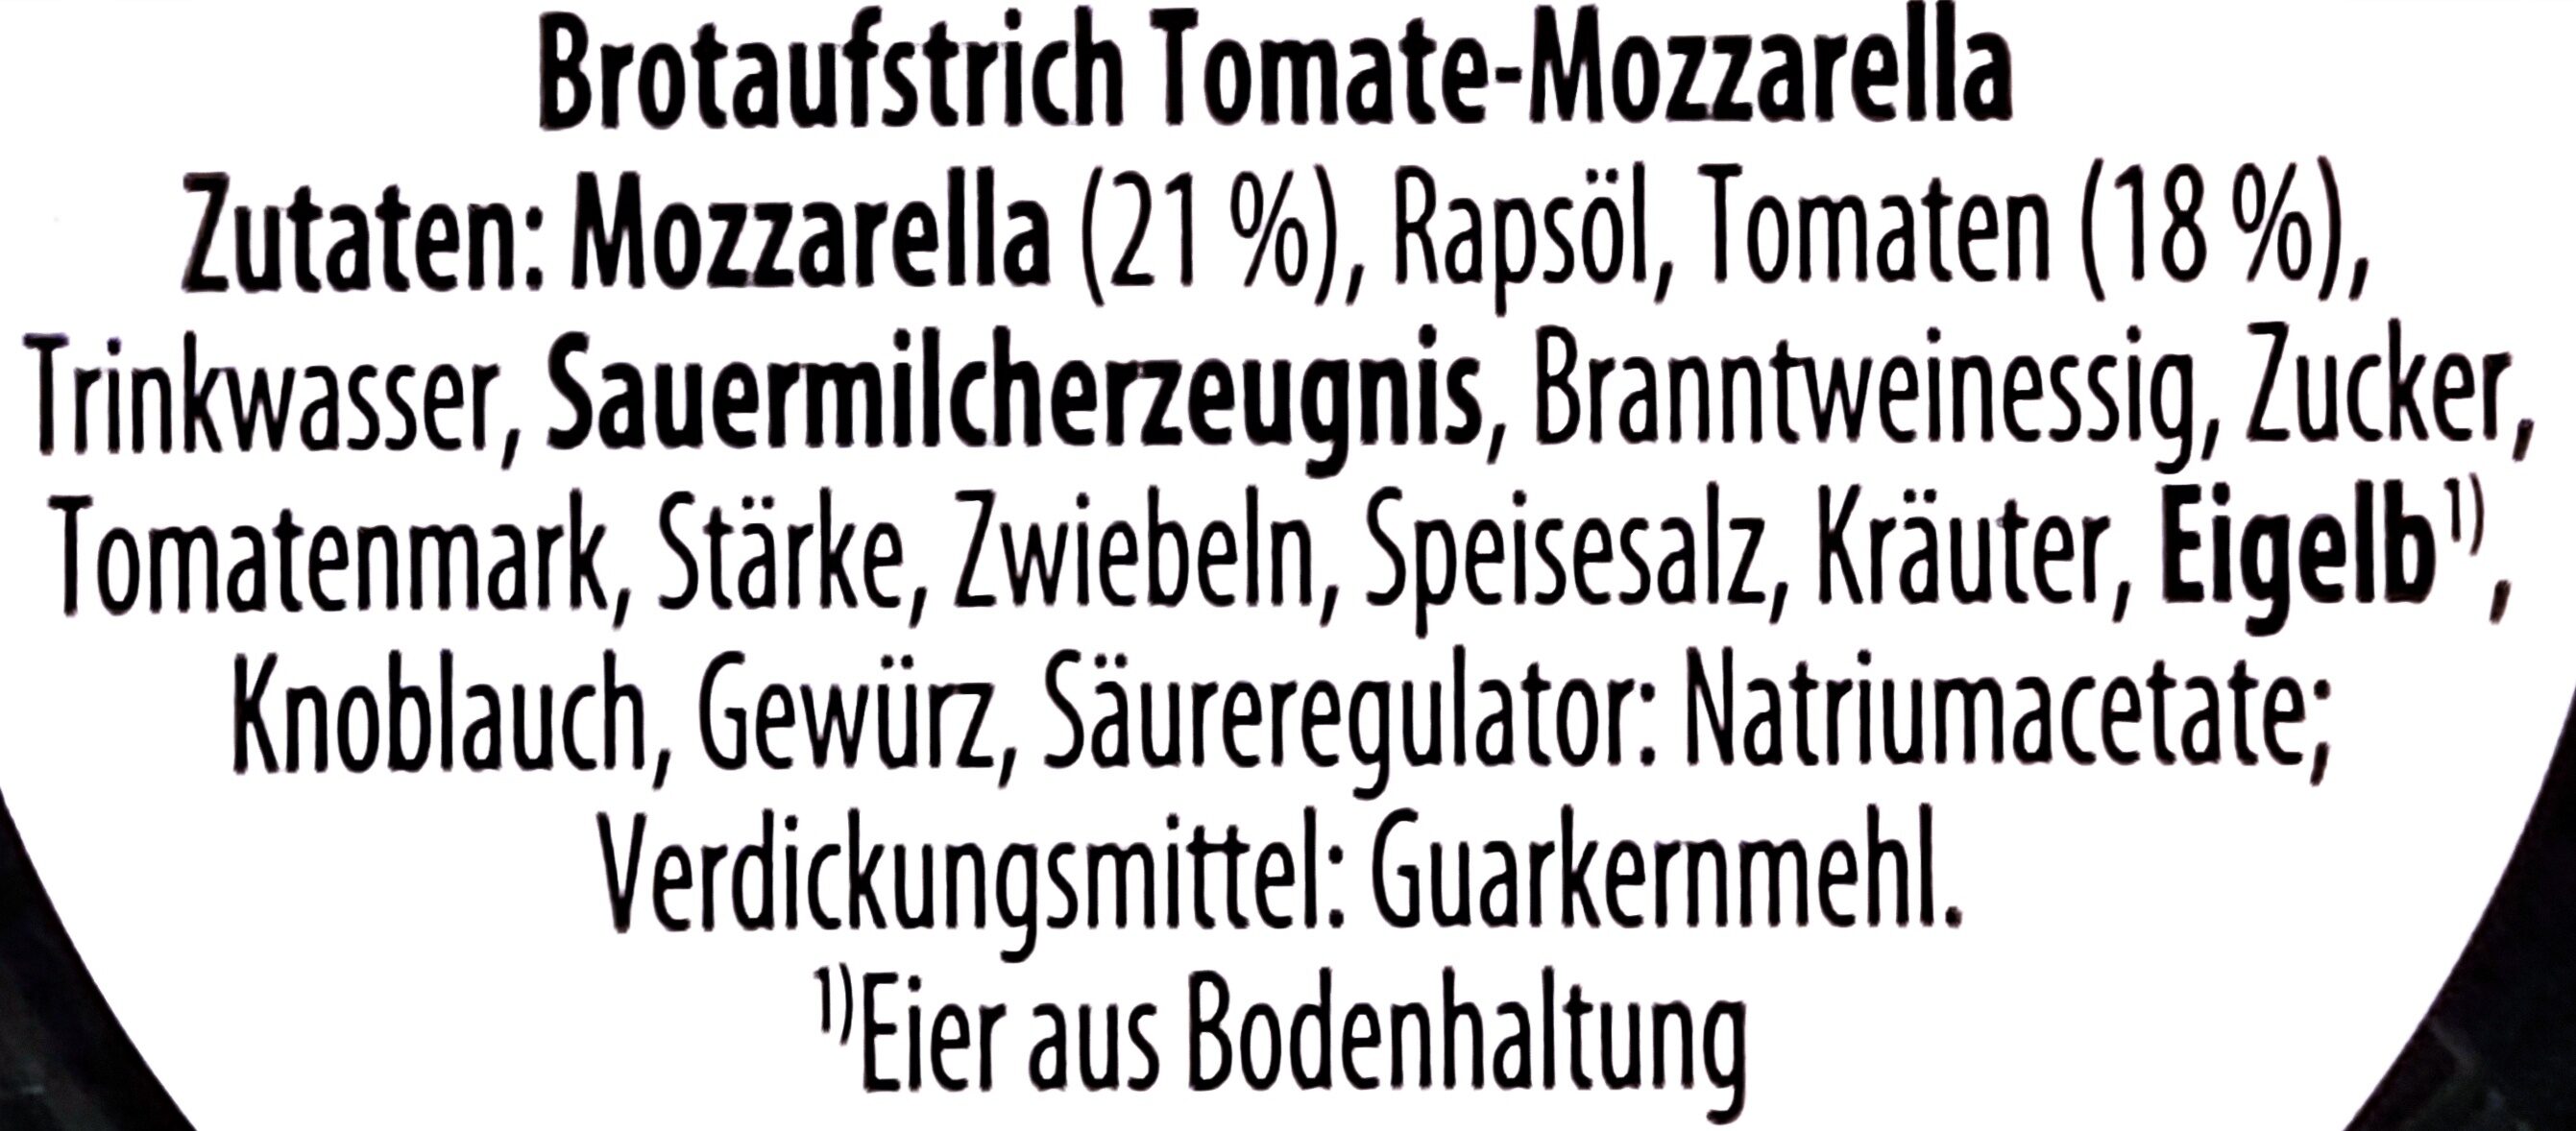 Brotaufstrich Tomate-Mozzarella - Zutaten